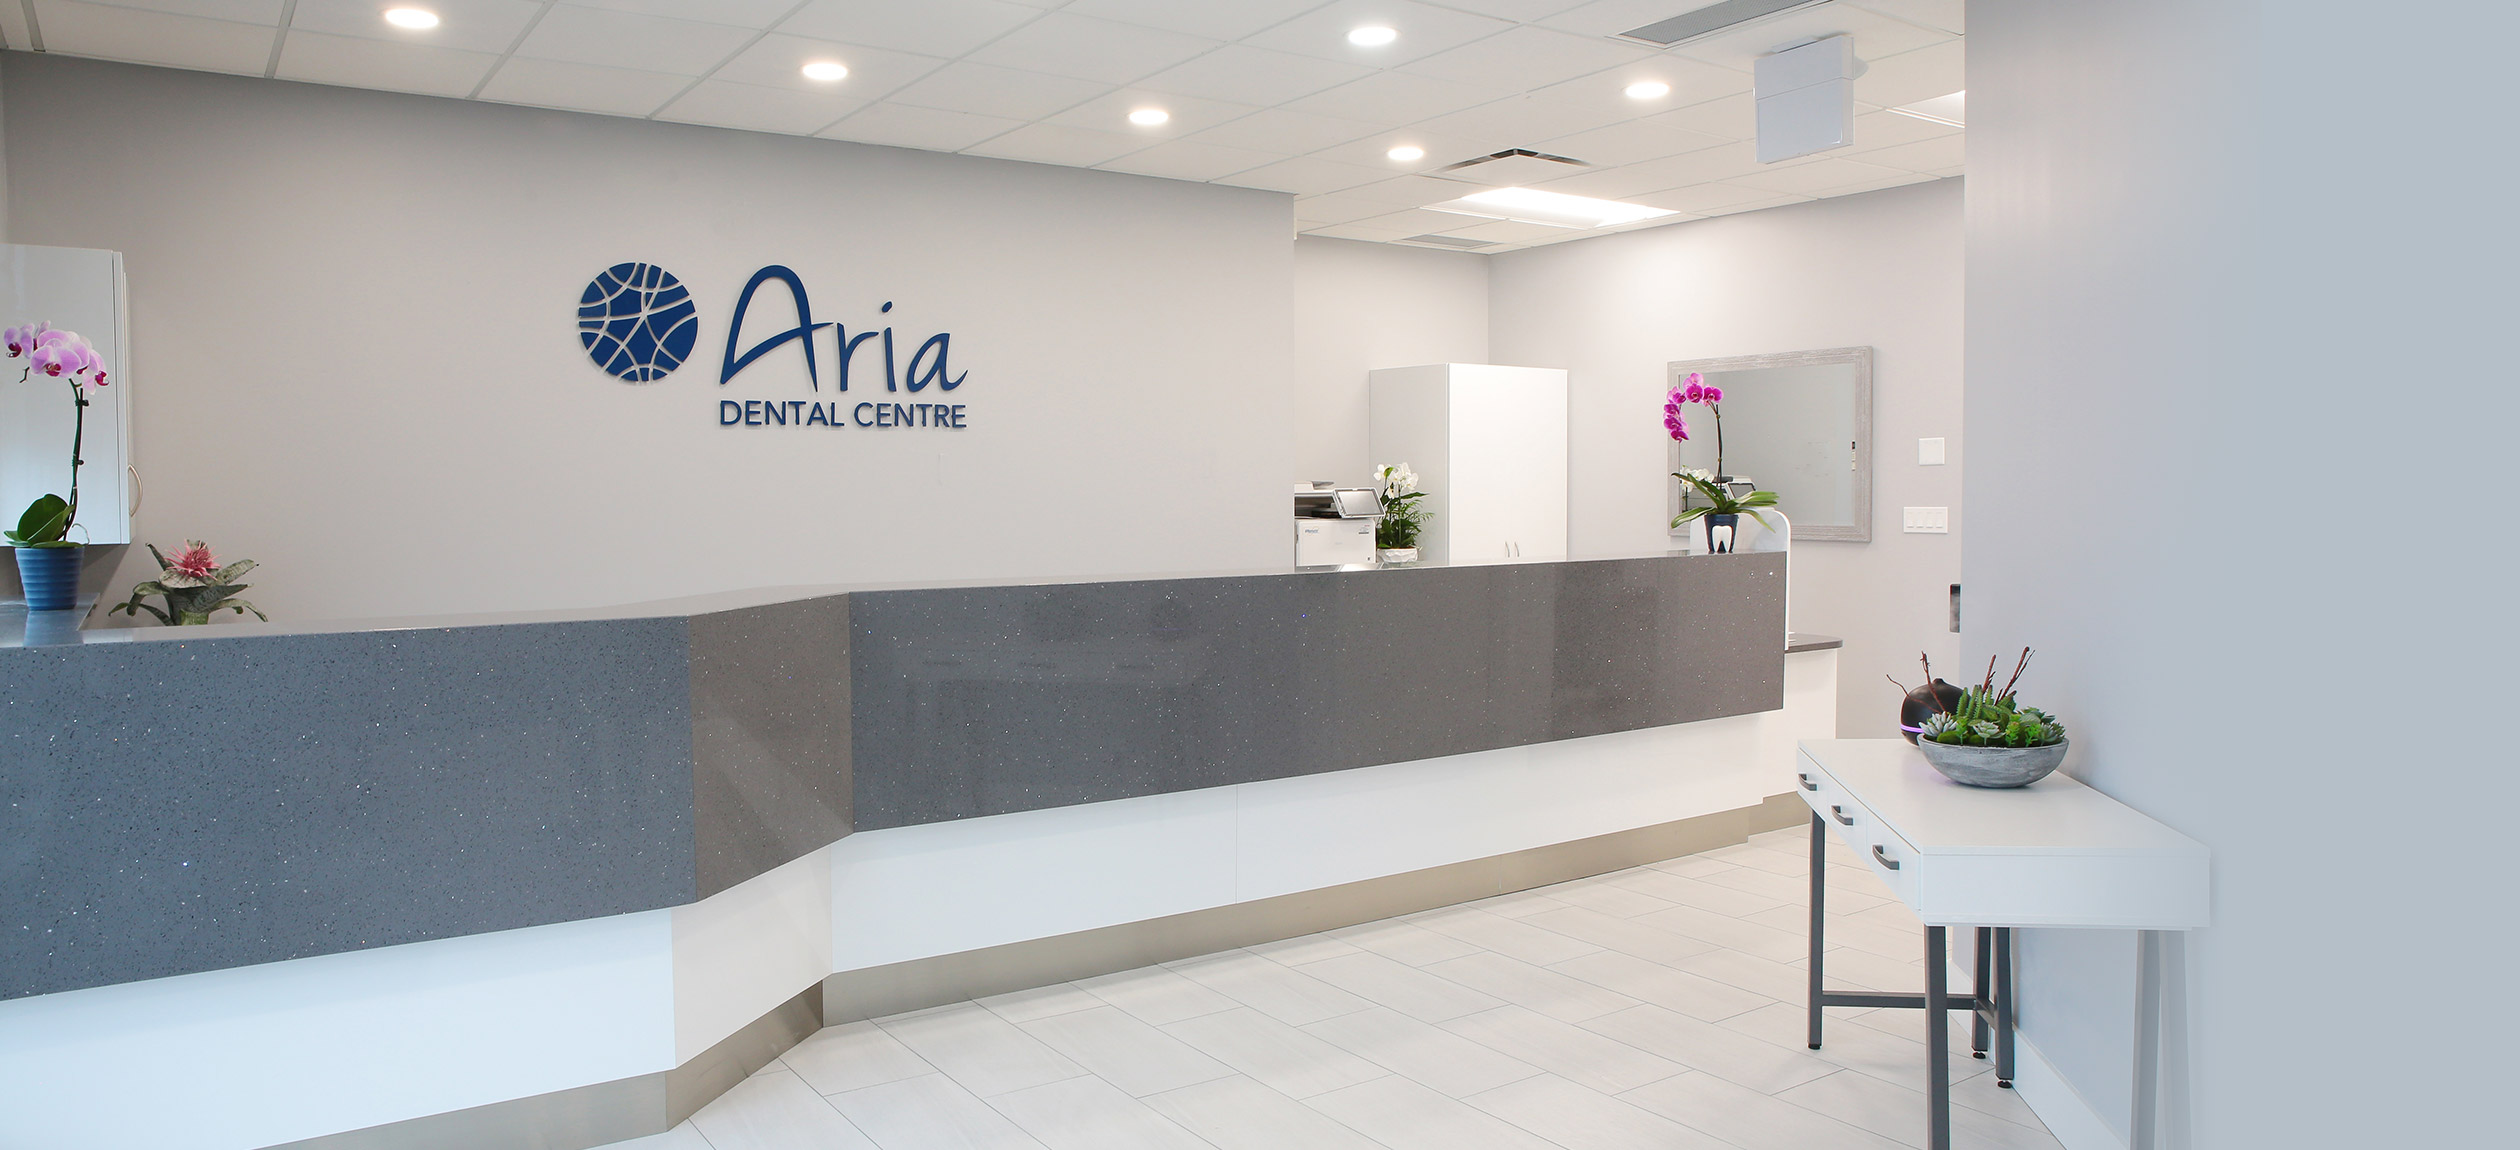 Aria Dental Team